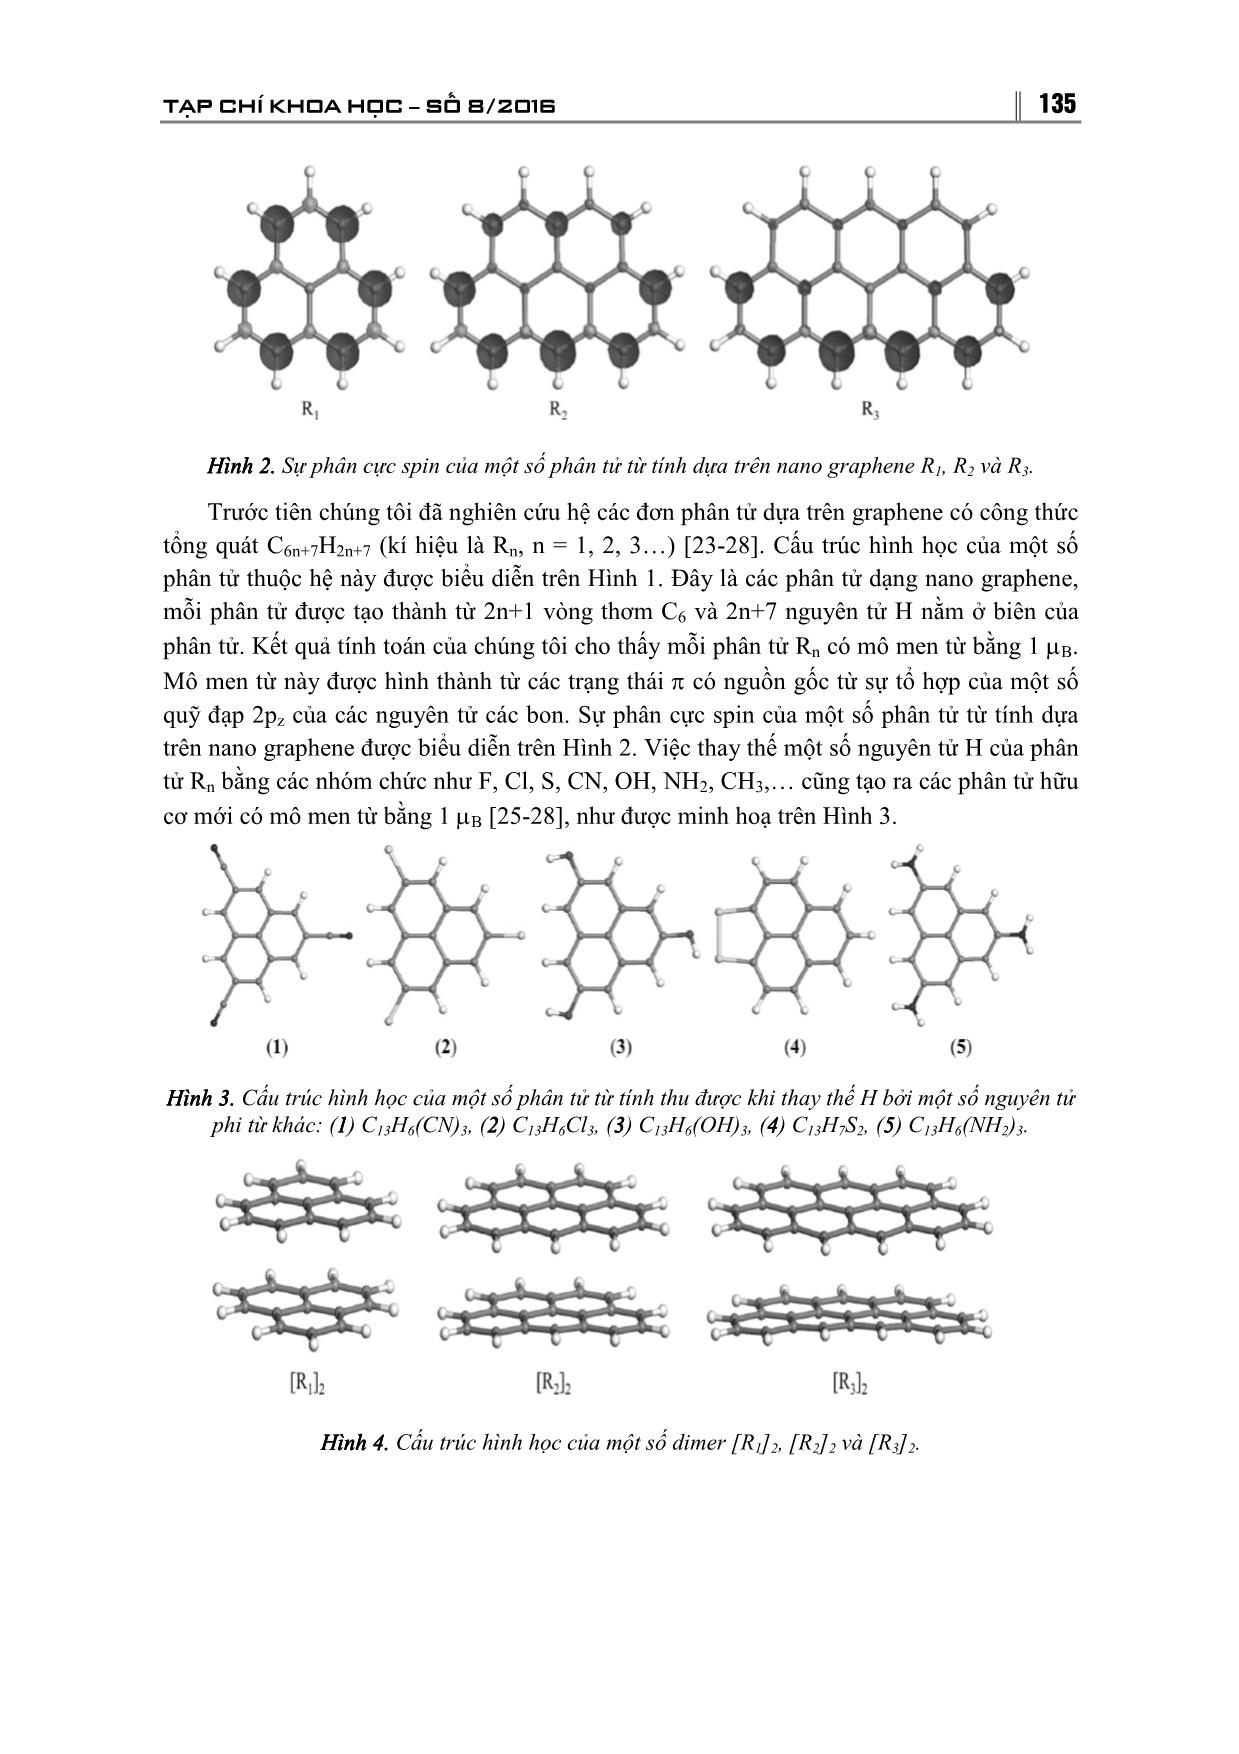 Nghiên cứu một số vật liệu từ Nano dựa trên Graphene trang 4